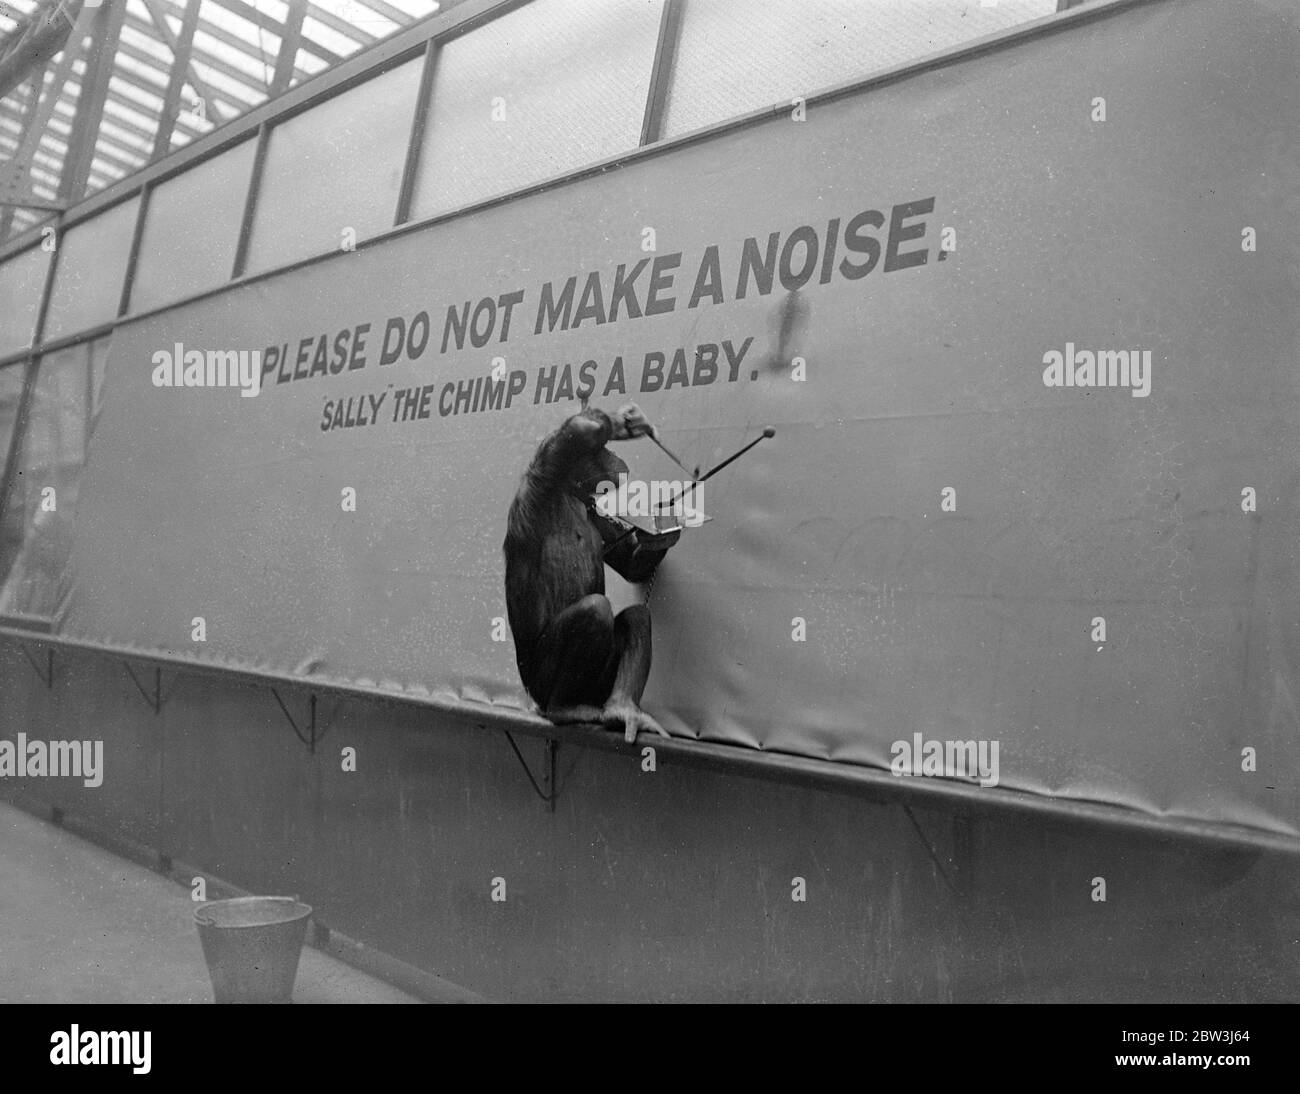 Sally, Zoo Schimpansen, gebiert Tochter - Fifi hilft, um sie bequem Sally, der Schimpansen im London Zoo, gebar ein Baby heute Morgen (Dienstag). Ihr Pfleger hatte eine Überraschung seines Lebens, als er seinen Morgenanruf auf Sally machte und den Neuling fand, der erst Ende des Monats erwartet wurde. Der Vater des Babys ist Koko, Vater des anderen berühmten Baby-Schimpansen Jubilee. Als die Geburt des neuen Babys entdeckt wurde, Sally und ihr Kind wurden in privaten Quartieren, und mit wahren weiblichen Fürsorge, Fifi, ein weiterer Schimpanse, half der Pfleger zu machen h Stockfoto